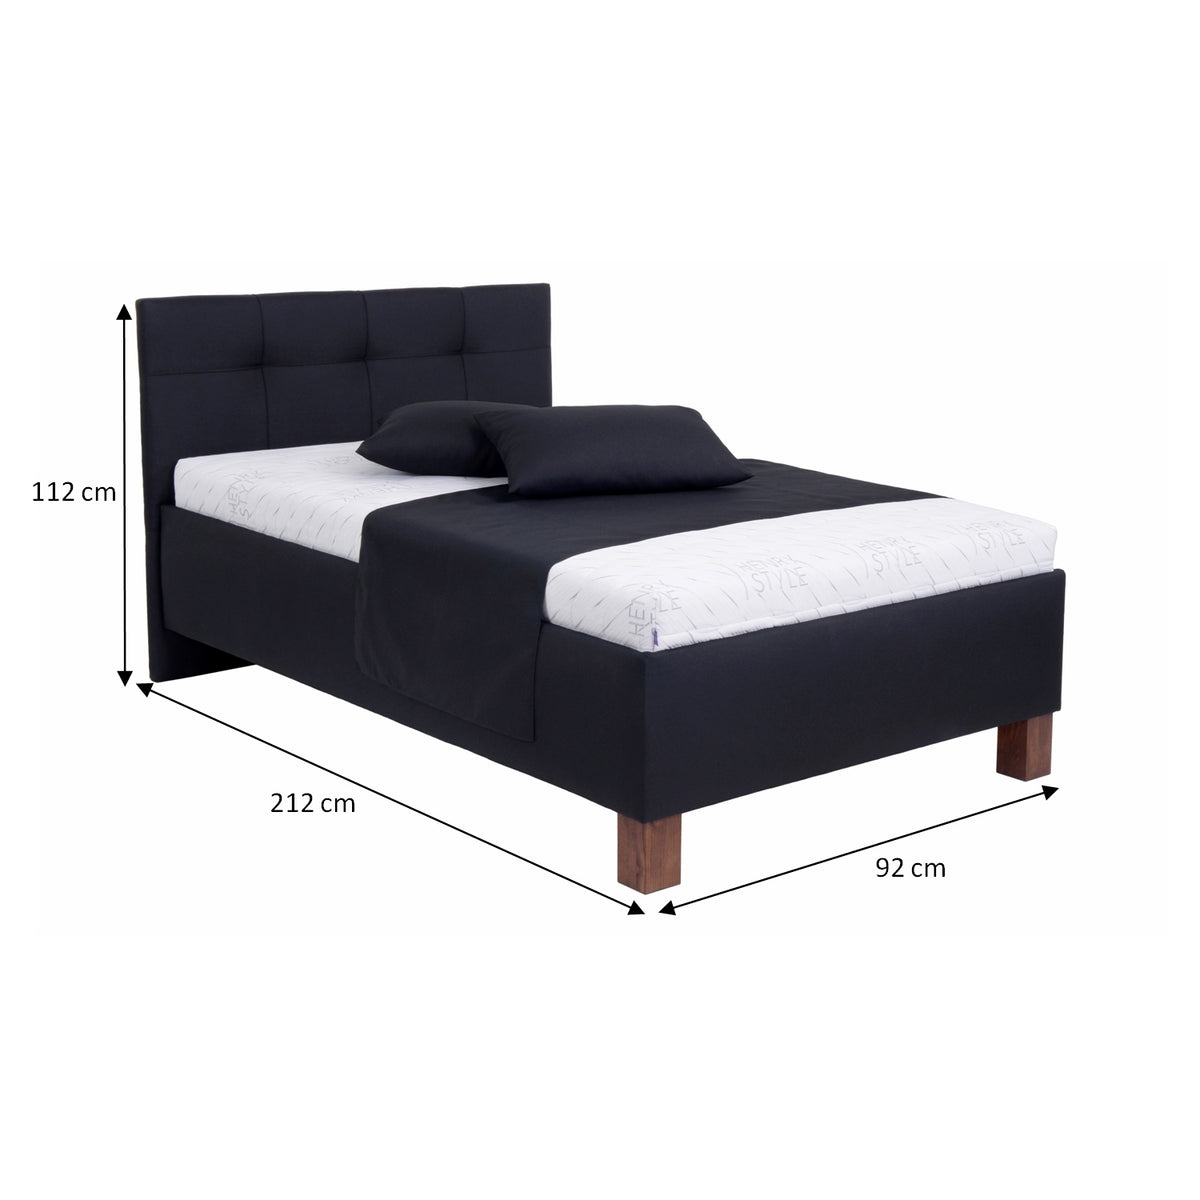 Čalouněná postel Mary 90x200, černá, včetně matrace